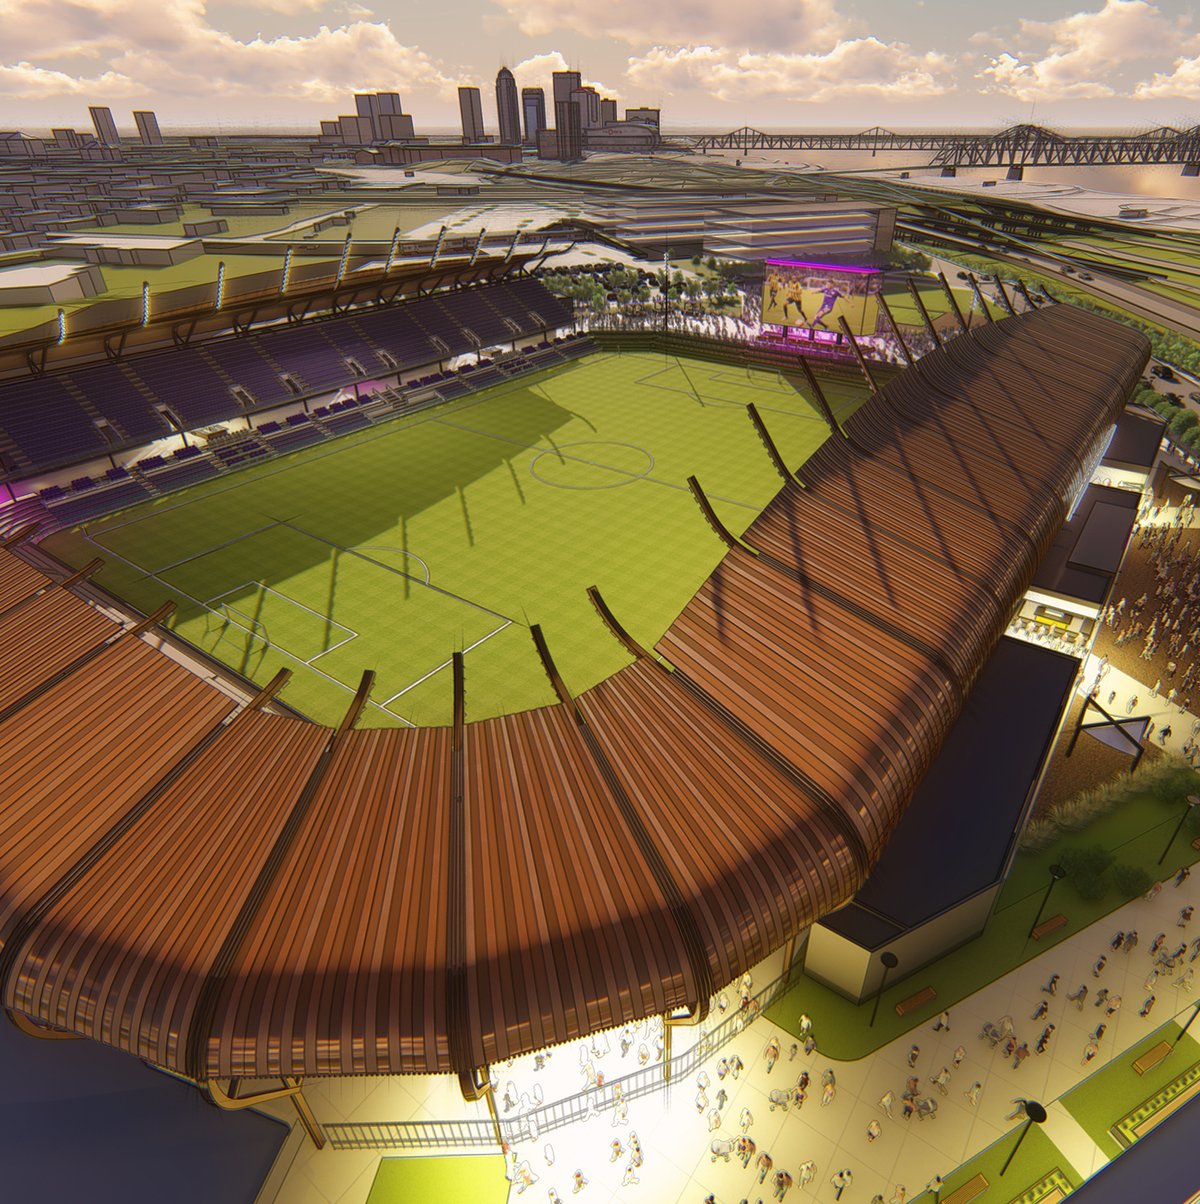 Brighton groundbreaking plans for purpose-built stadium – Her